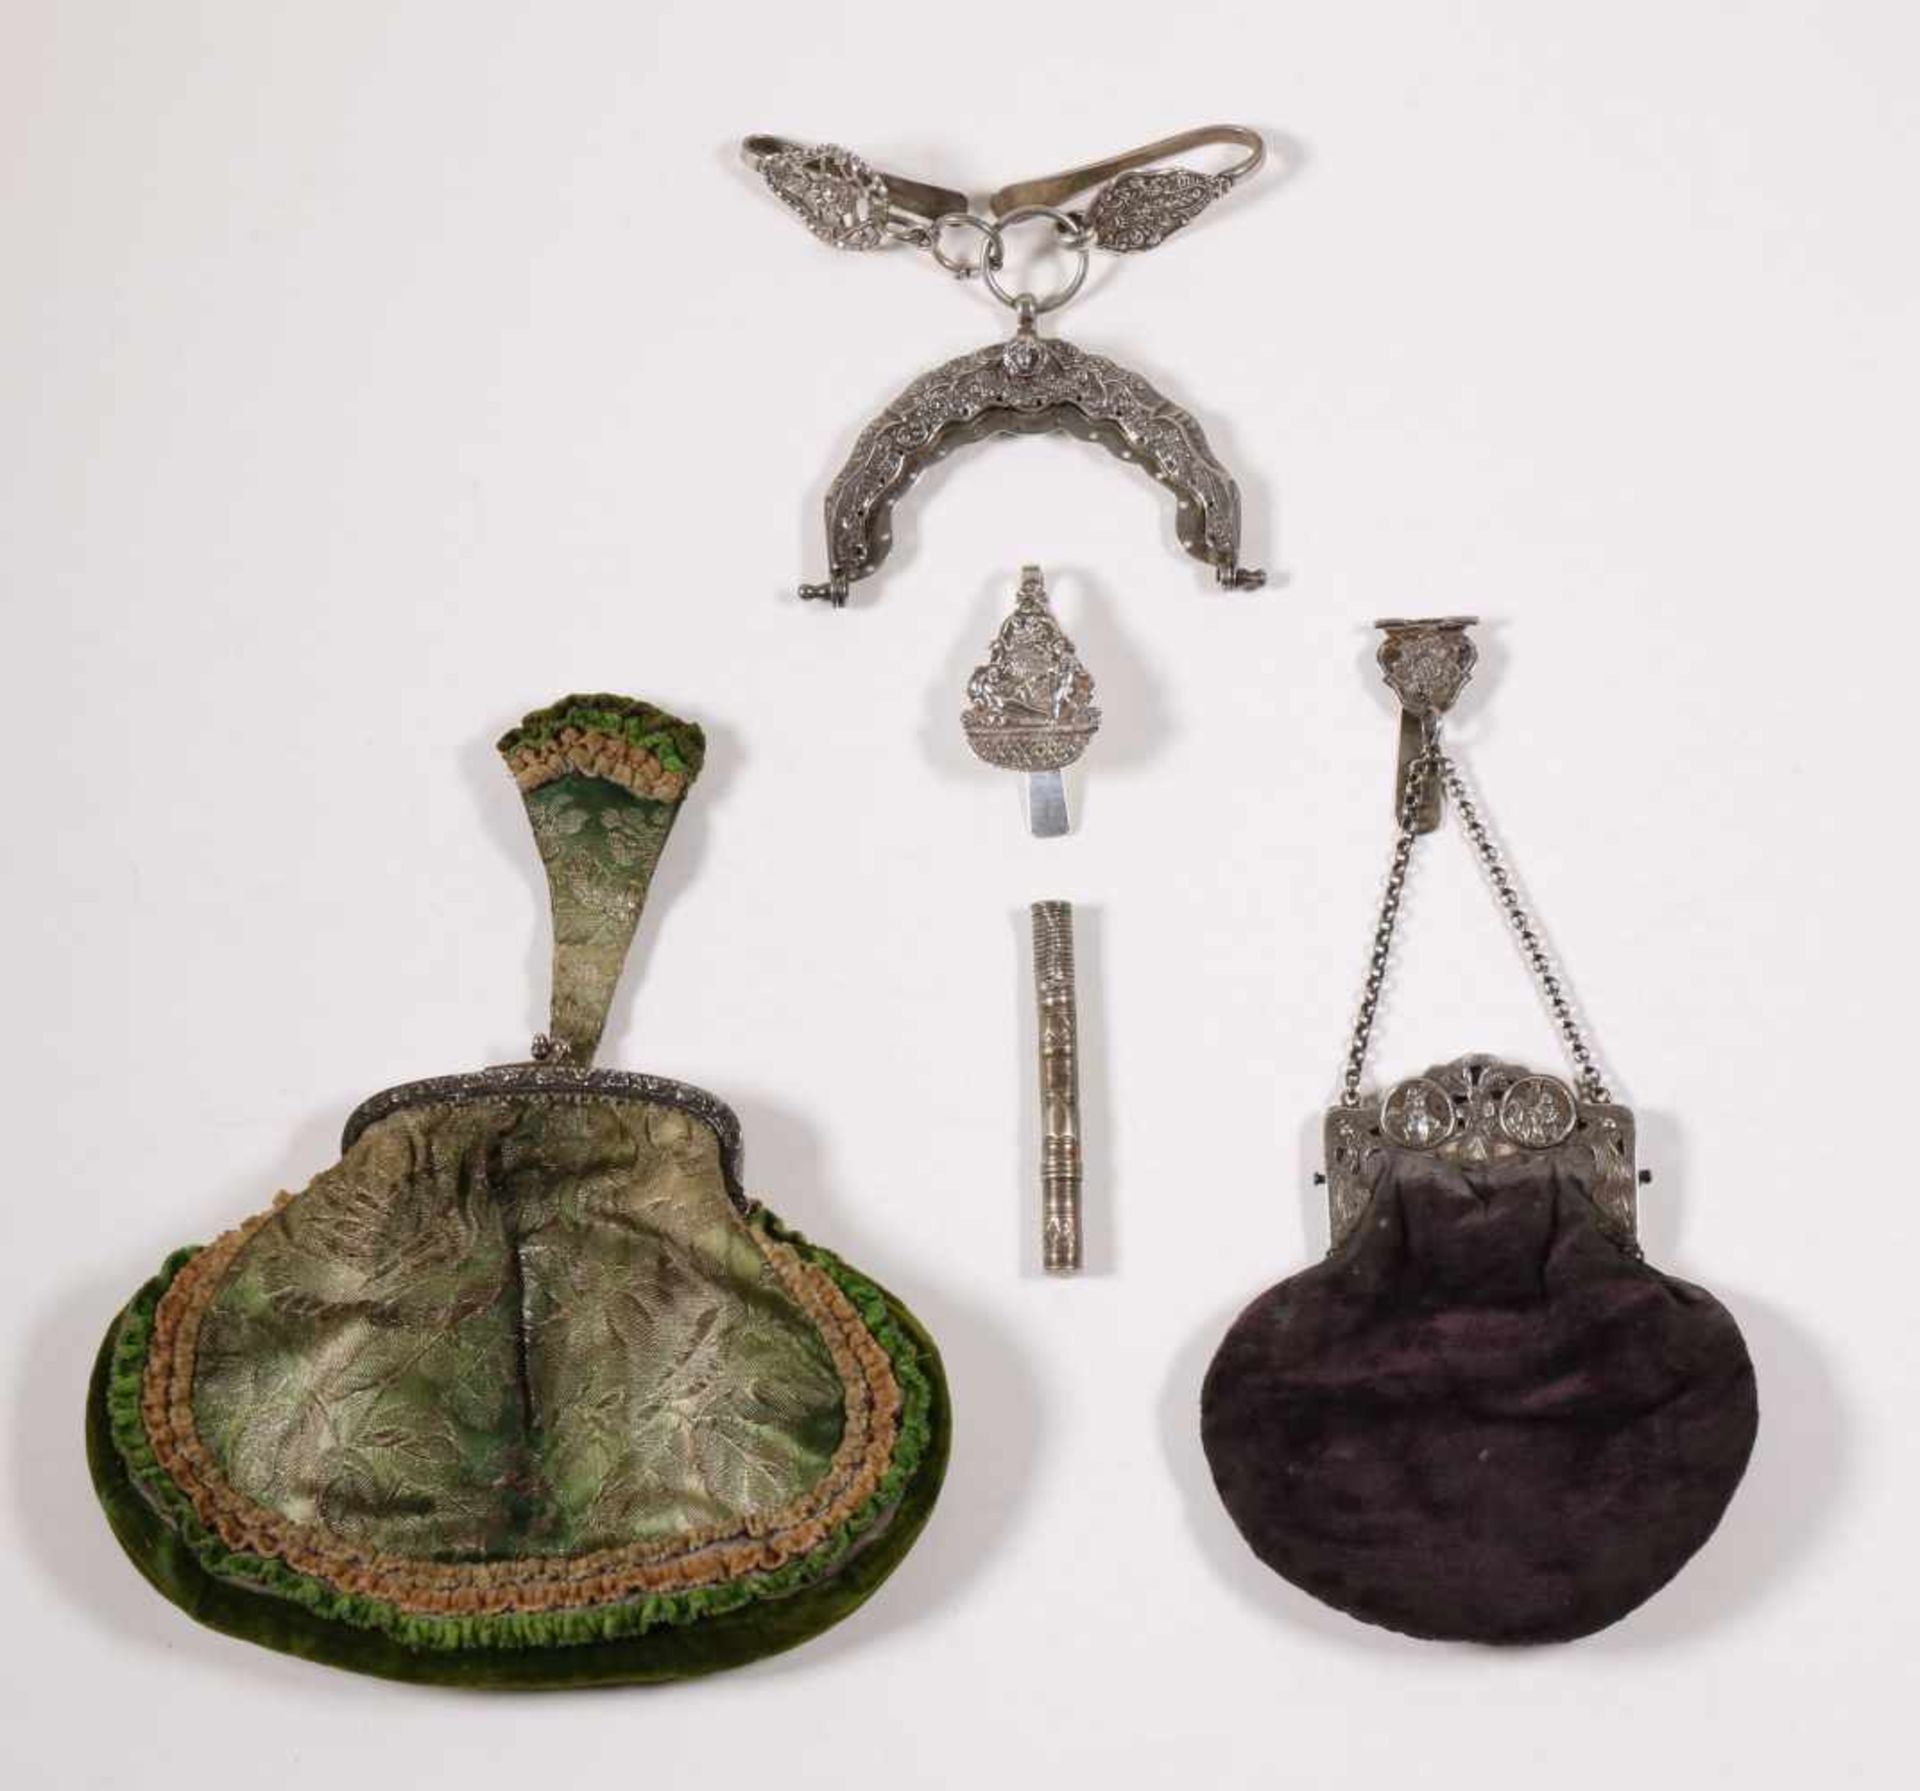 Tasbeugel met tas en haak, tasbeugel en twee haken, tas, losse tashaak en naaldenkoker, 19e eeuw,